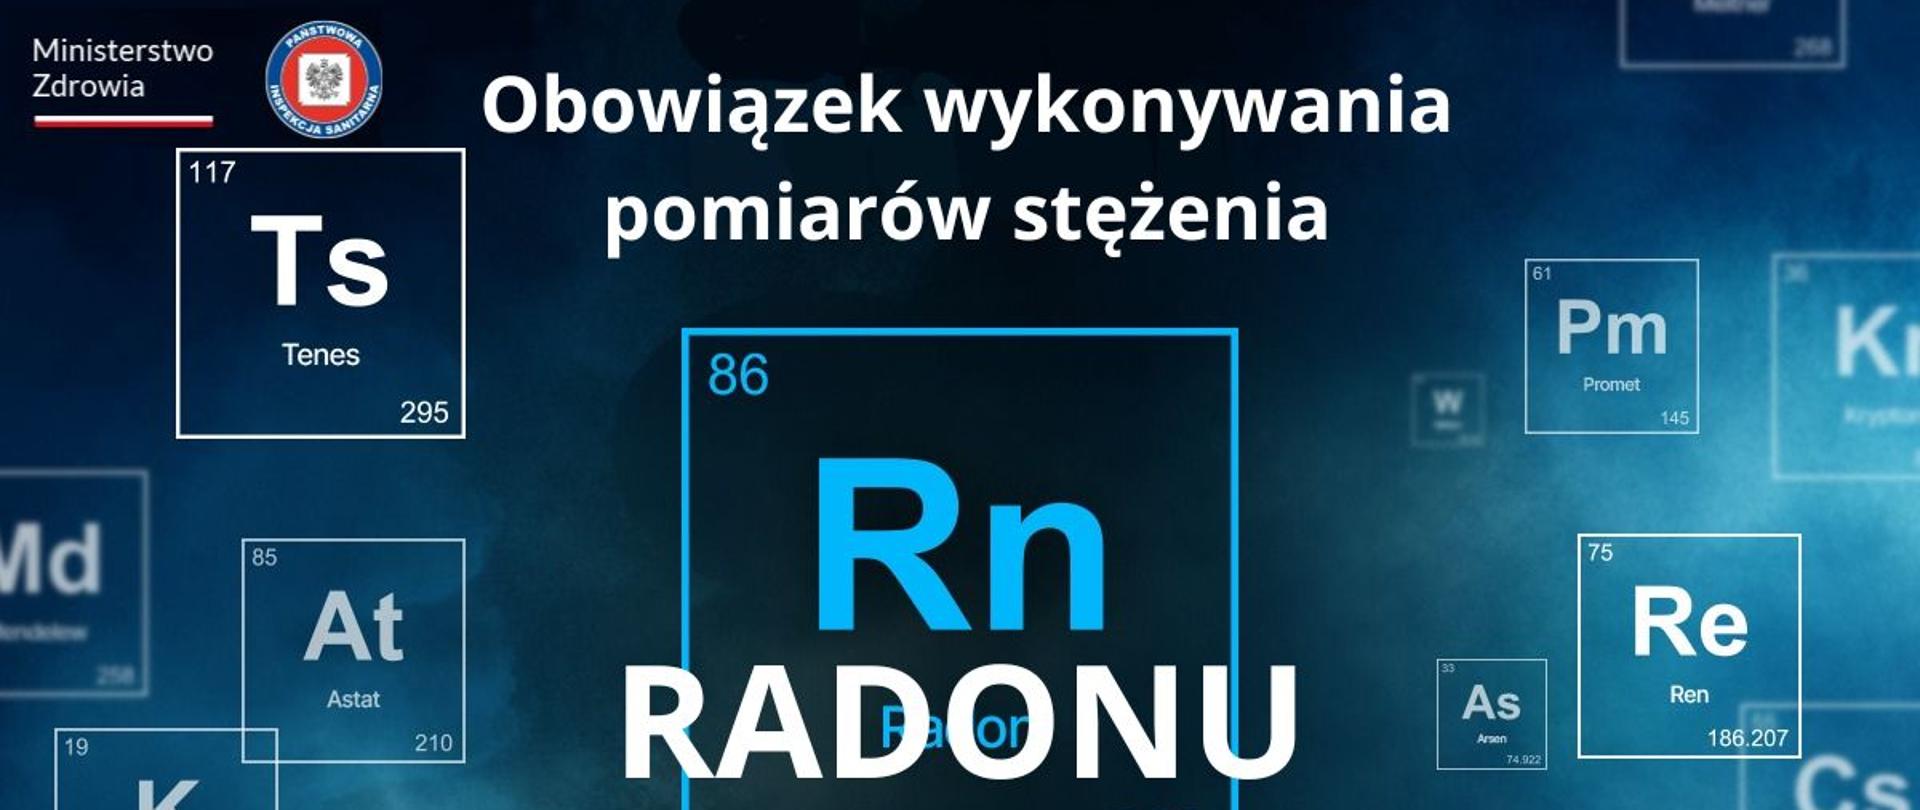 Obowiązek wykonywania pomiarów stężenia radonu